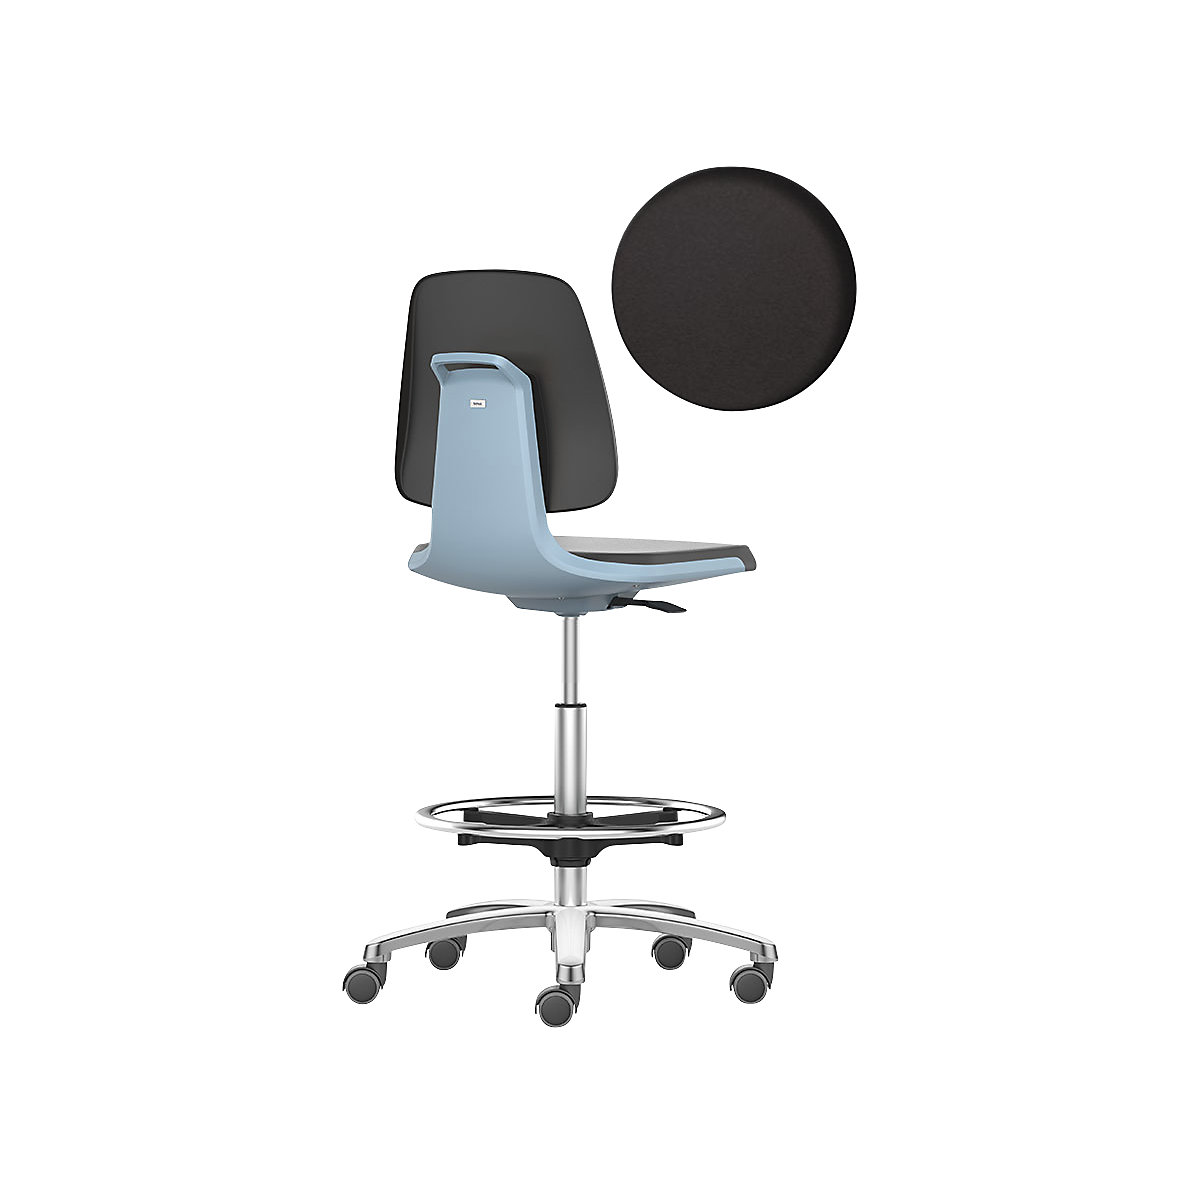 Arbeitsdrehstuhl LABSIT bimos, Hochstuhl mit Sitz-Stopp-Rollen und Fußring, Sitz aus PU-Schaum, blau-10